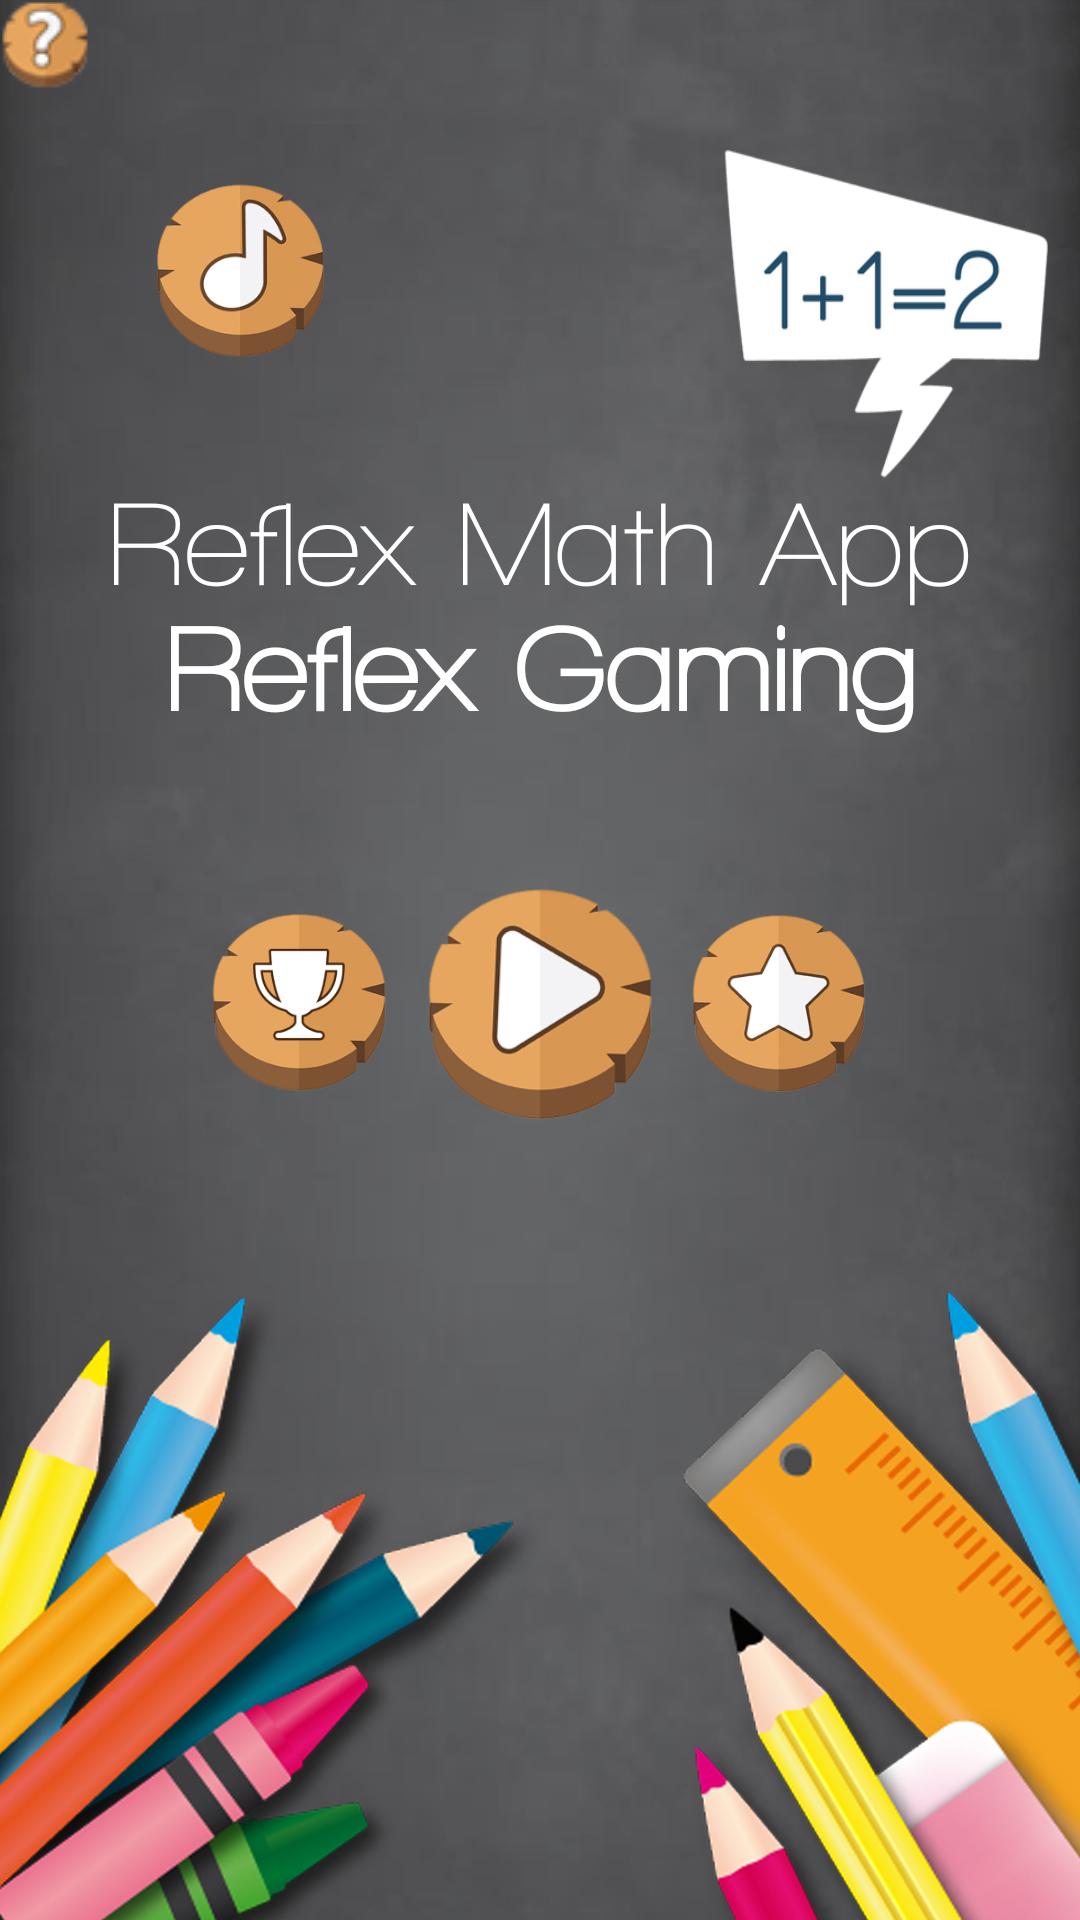 Does Reflex Math Have An App